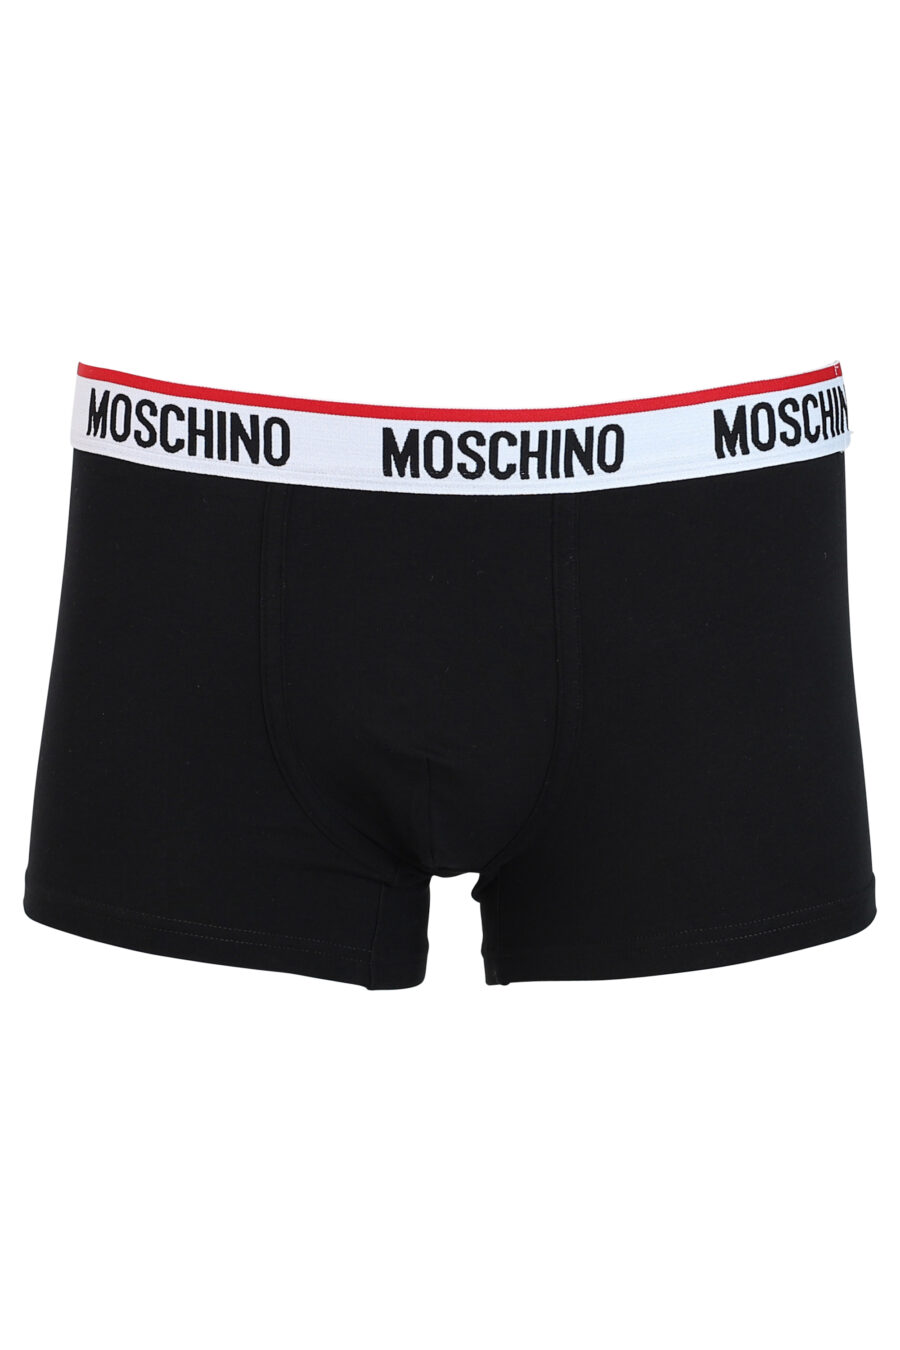 Pack de dos boxers negros y blancos con logo negro y rojo en cinturilla - IMG 0354